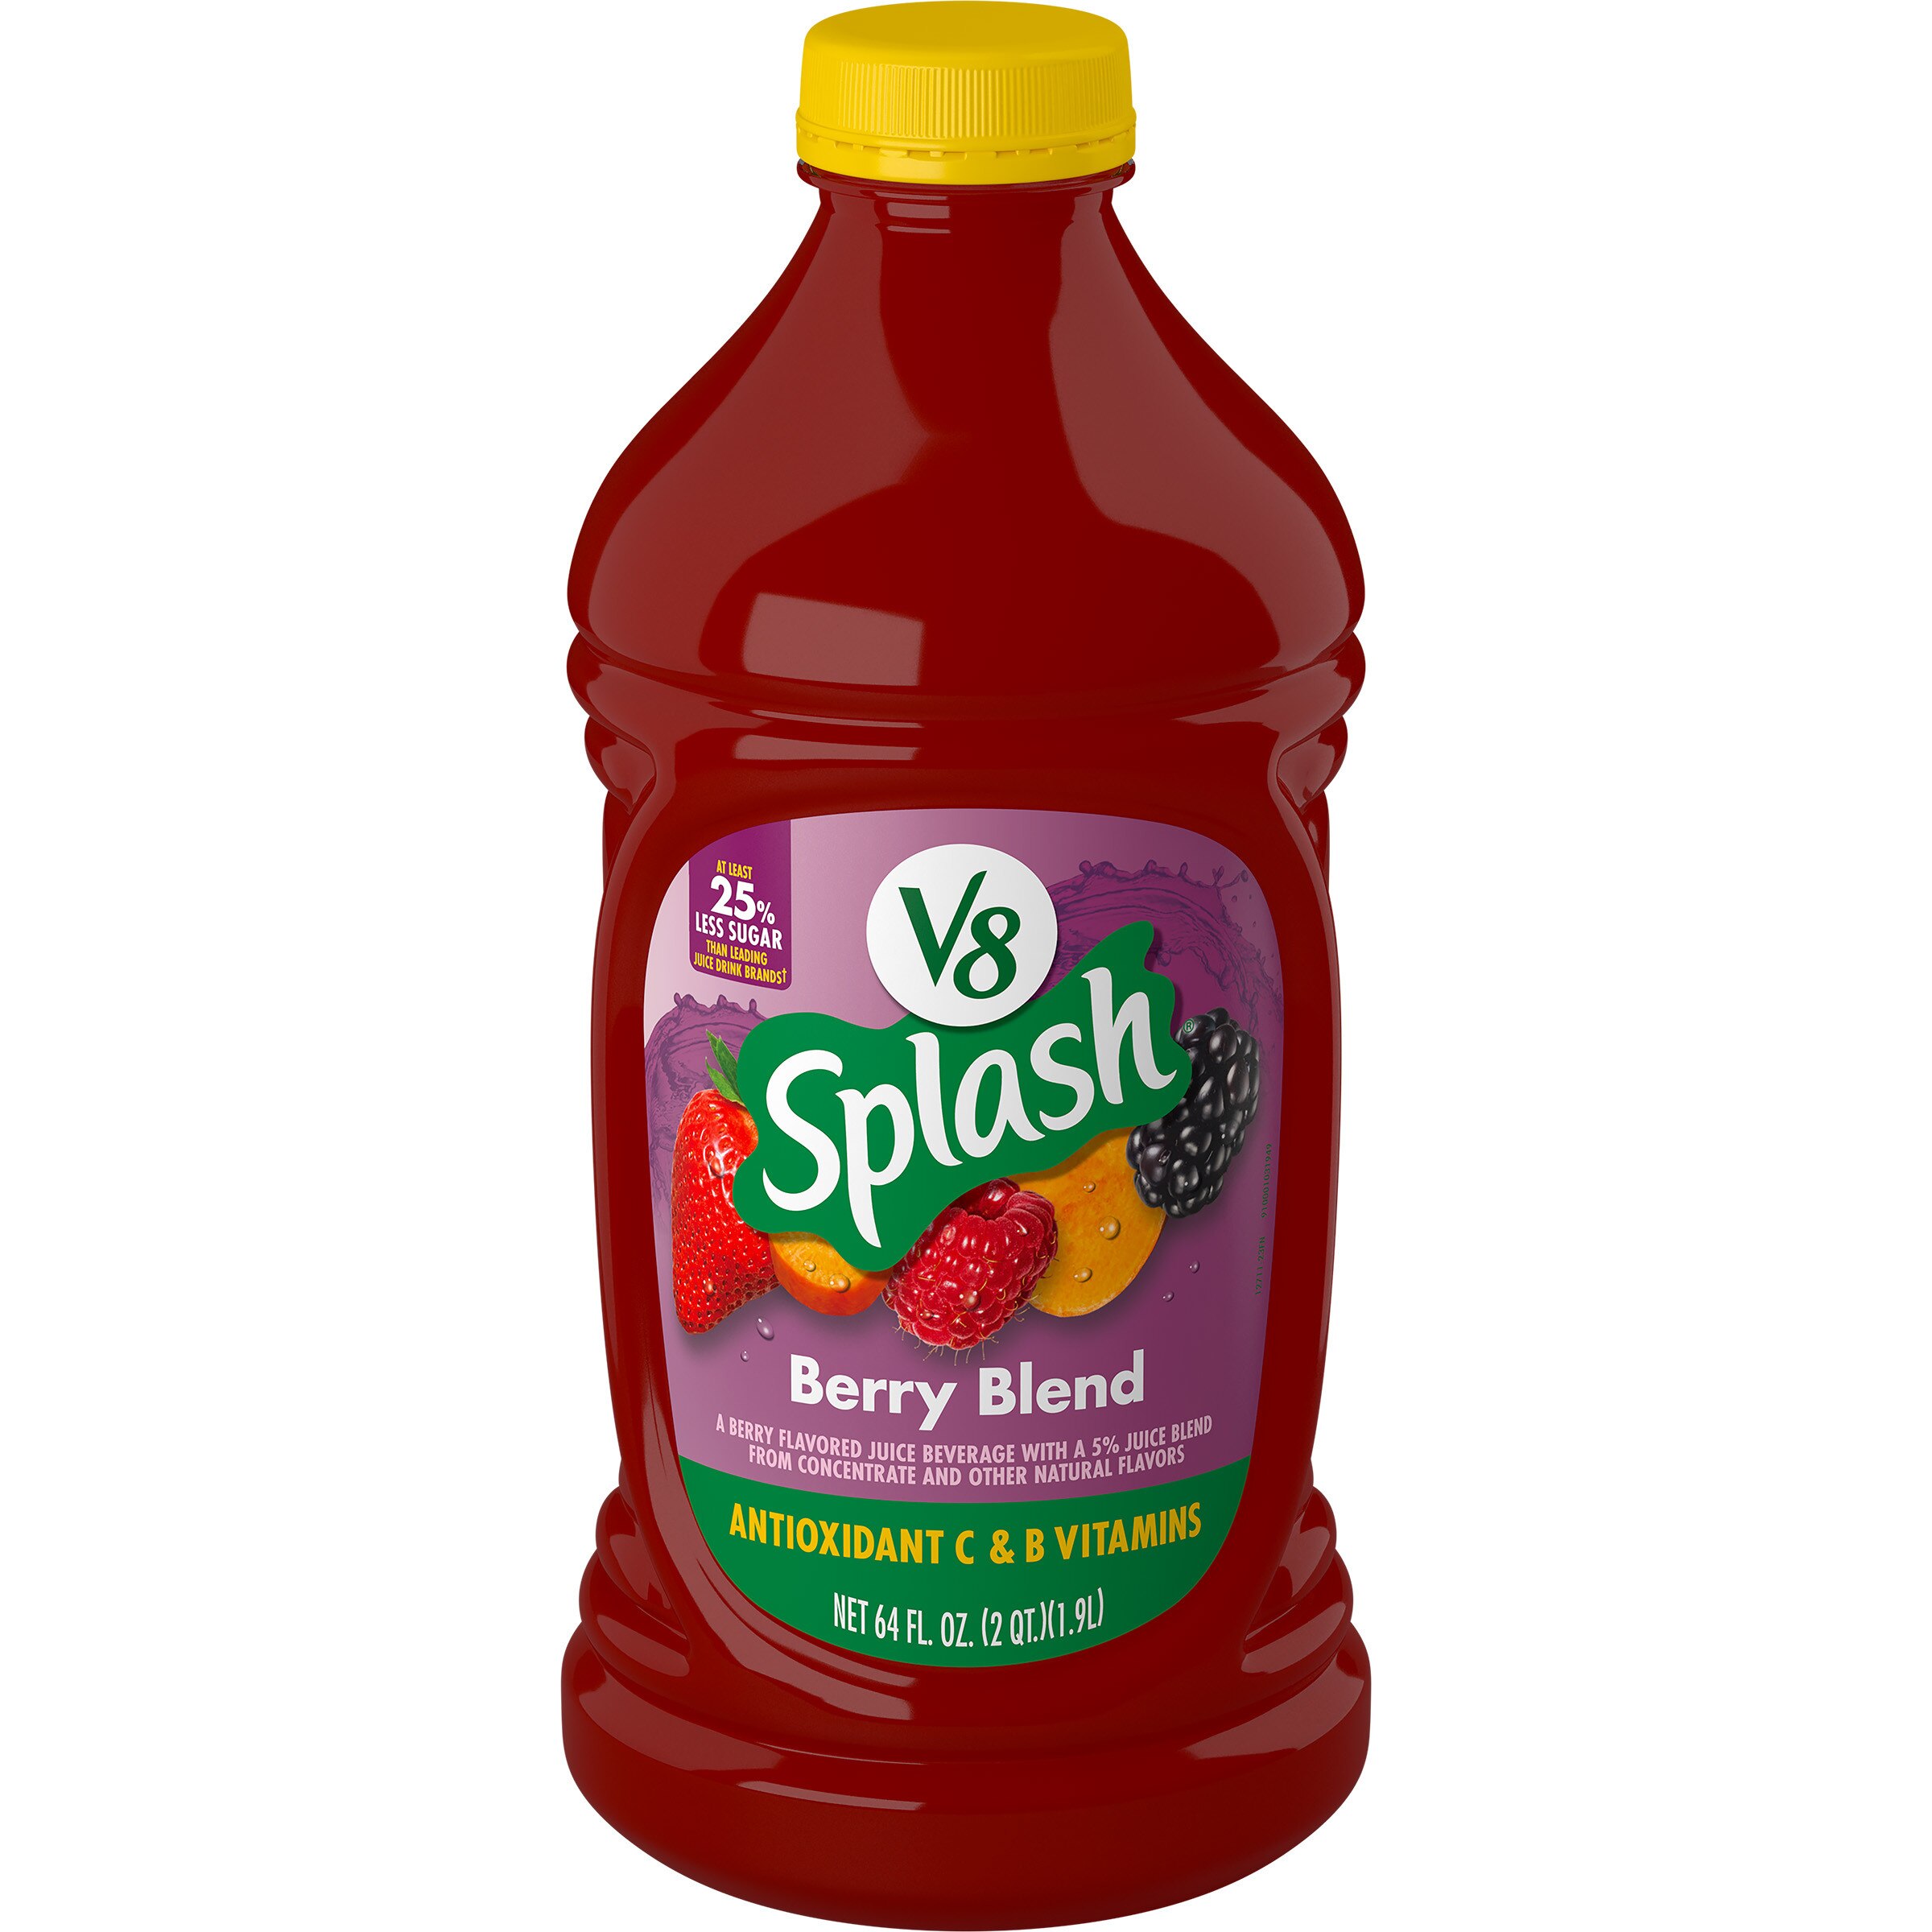 V8 Splash Berry Blend Flavored Juice Beverage, 64 FL OZ Bottle